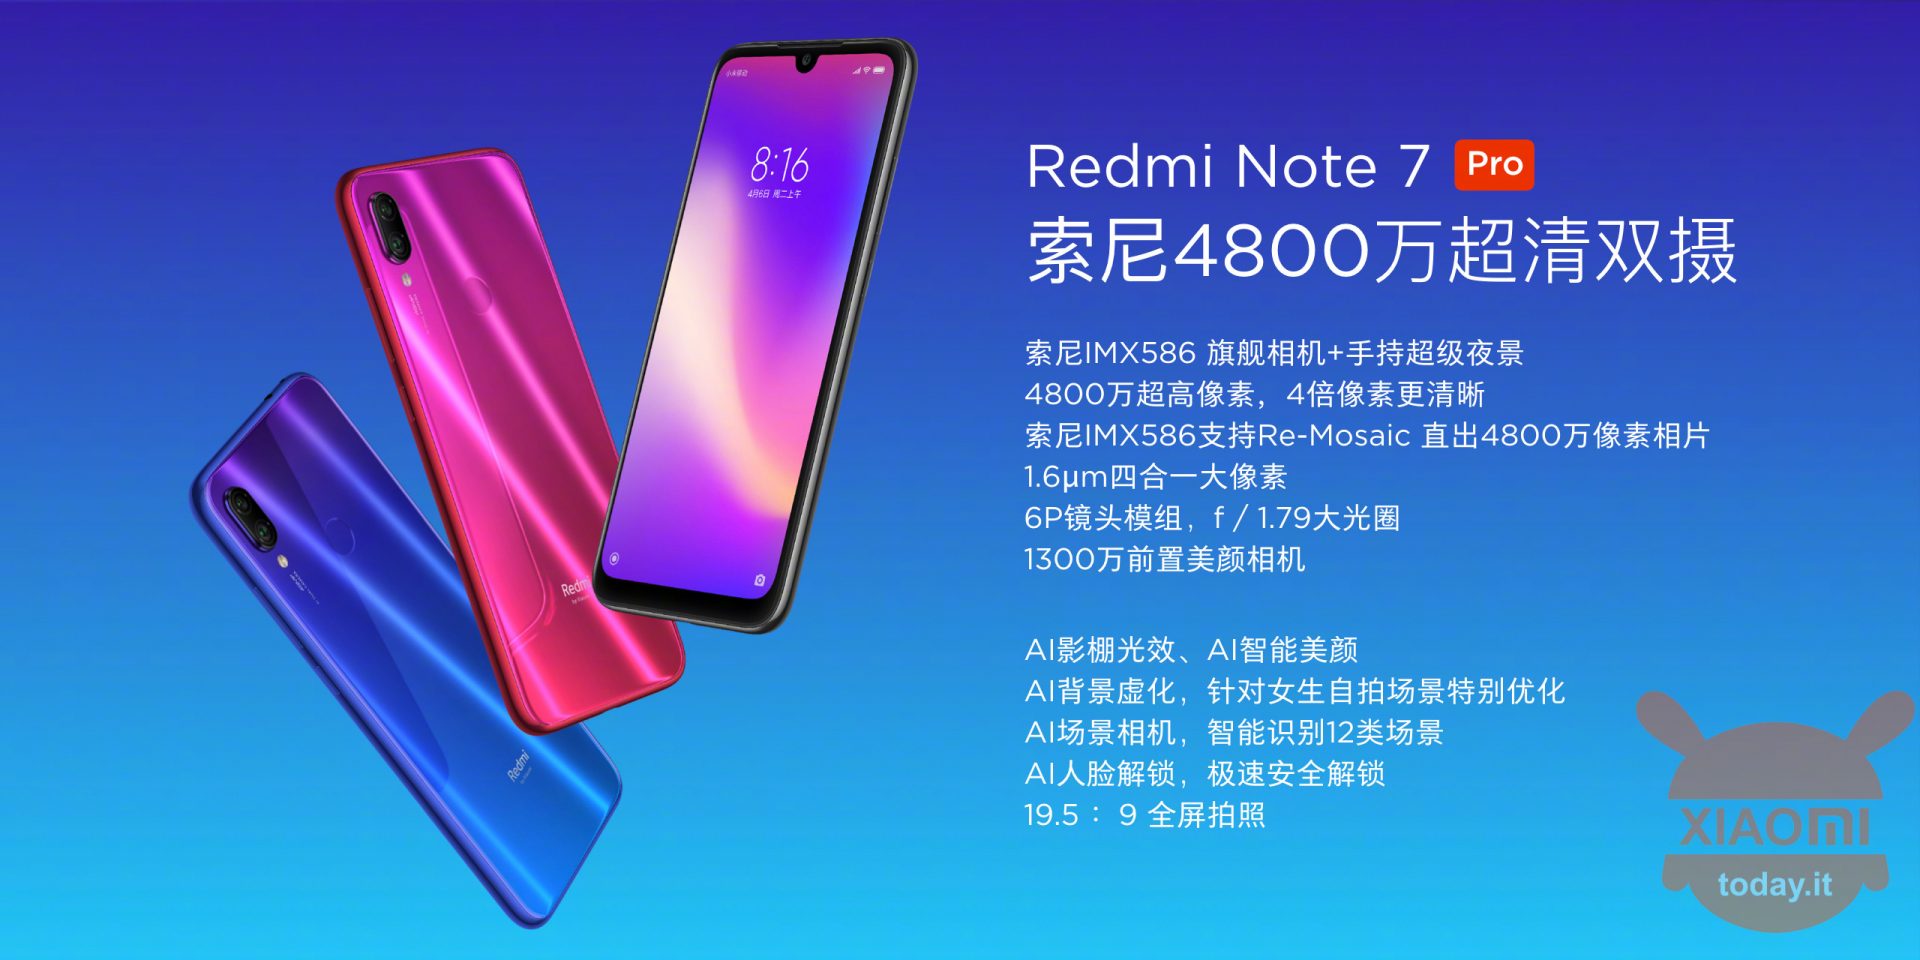 Xiaomi Redmi Note 7 Pro launch